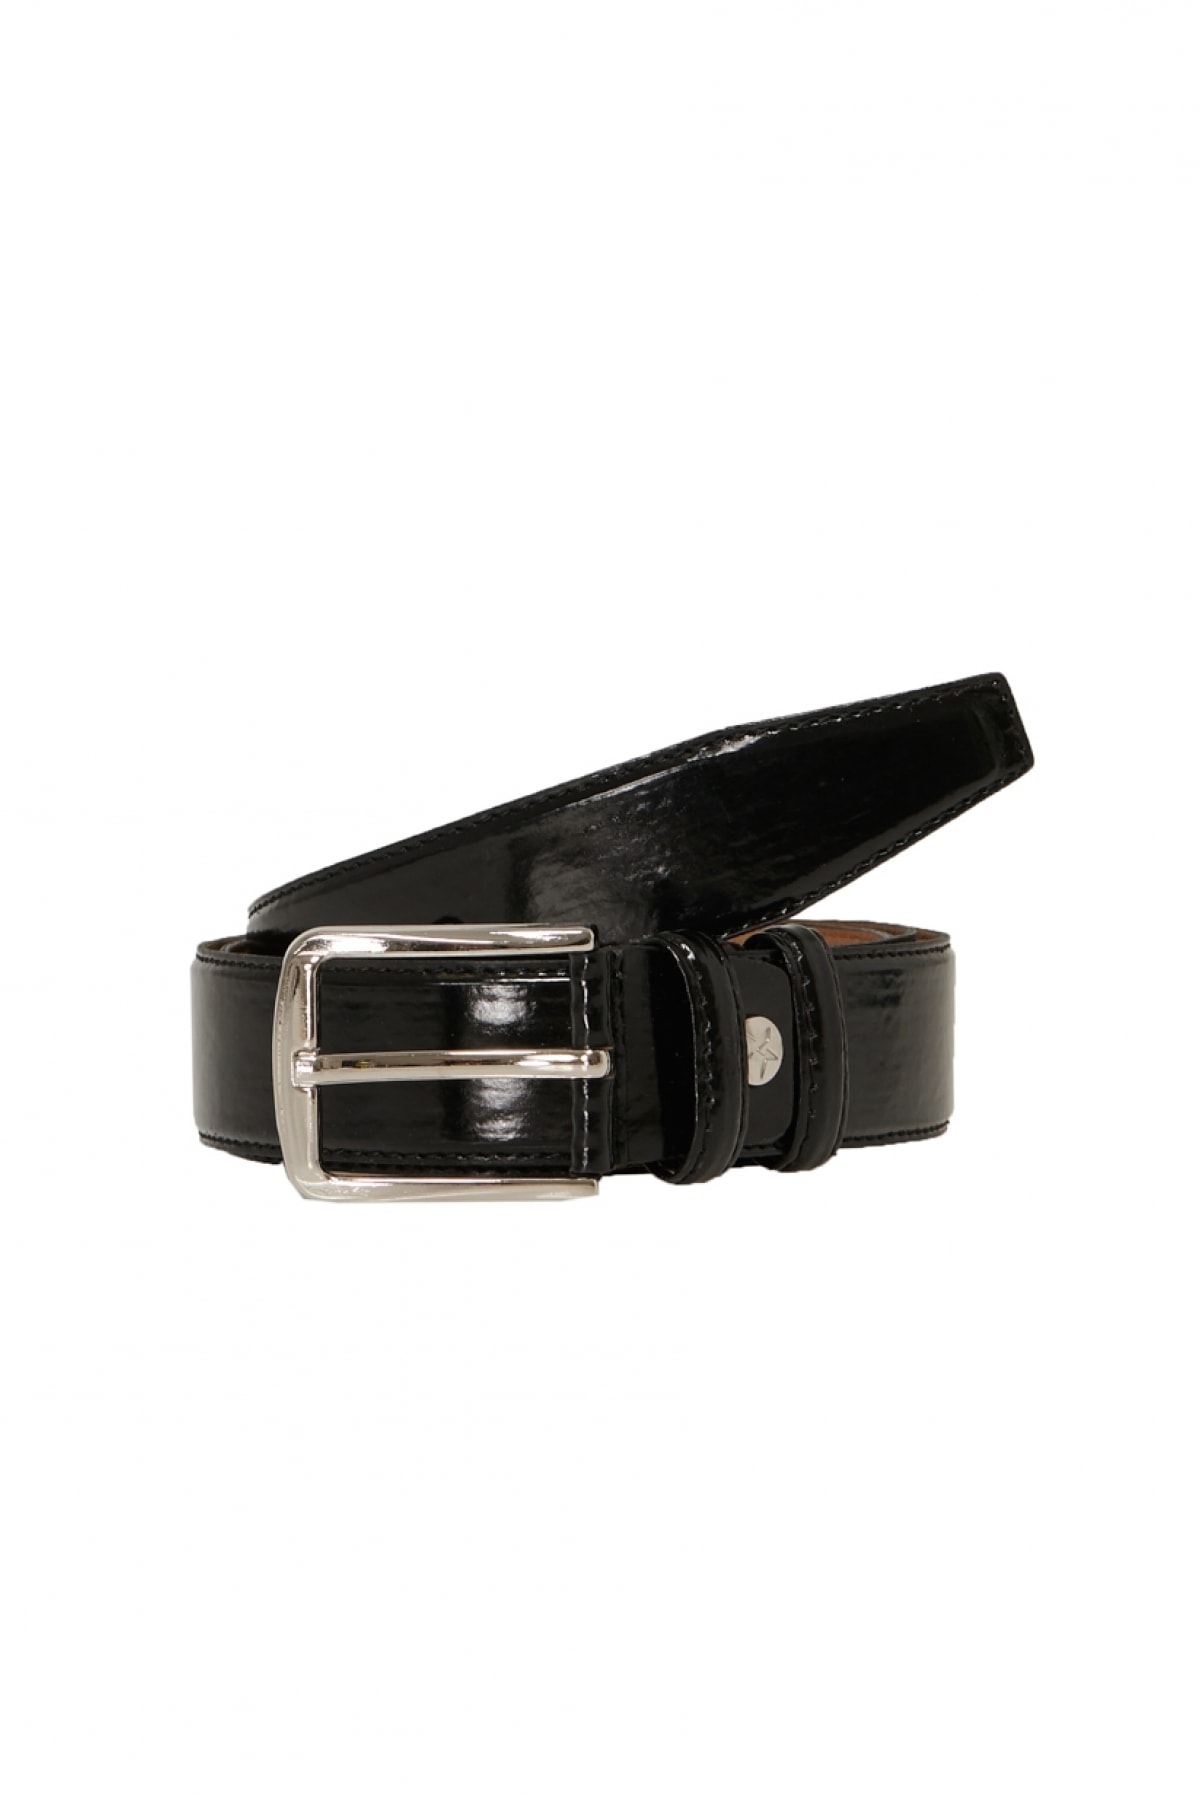 ALTINYILDIZ CLASSICS Men's Black Classic Patterned Patent Leather Suit Belt